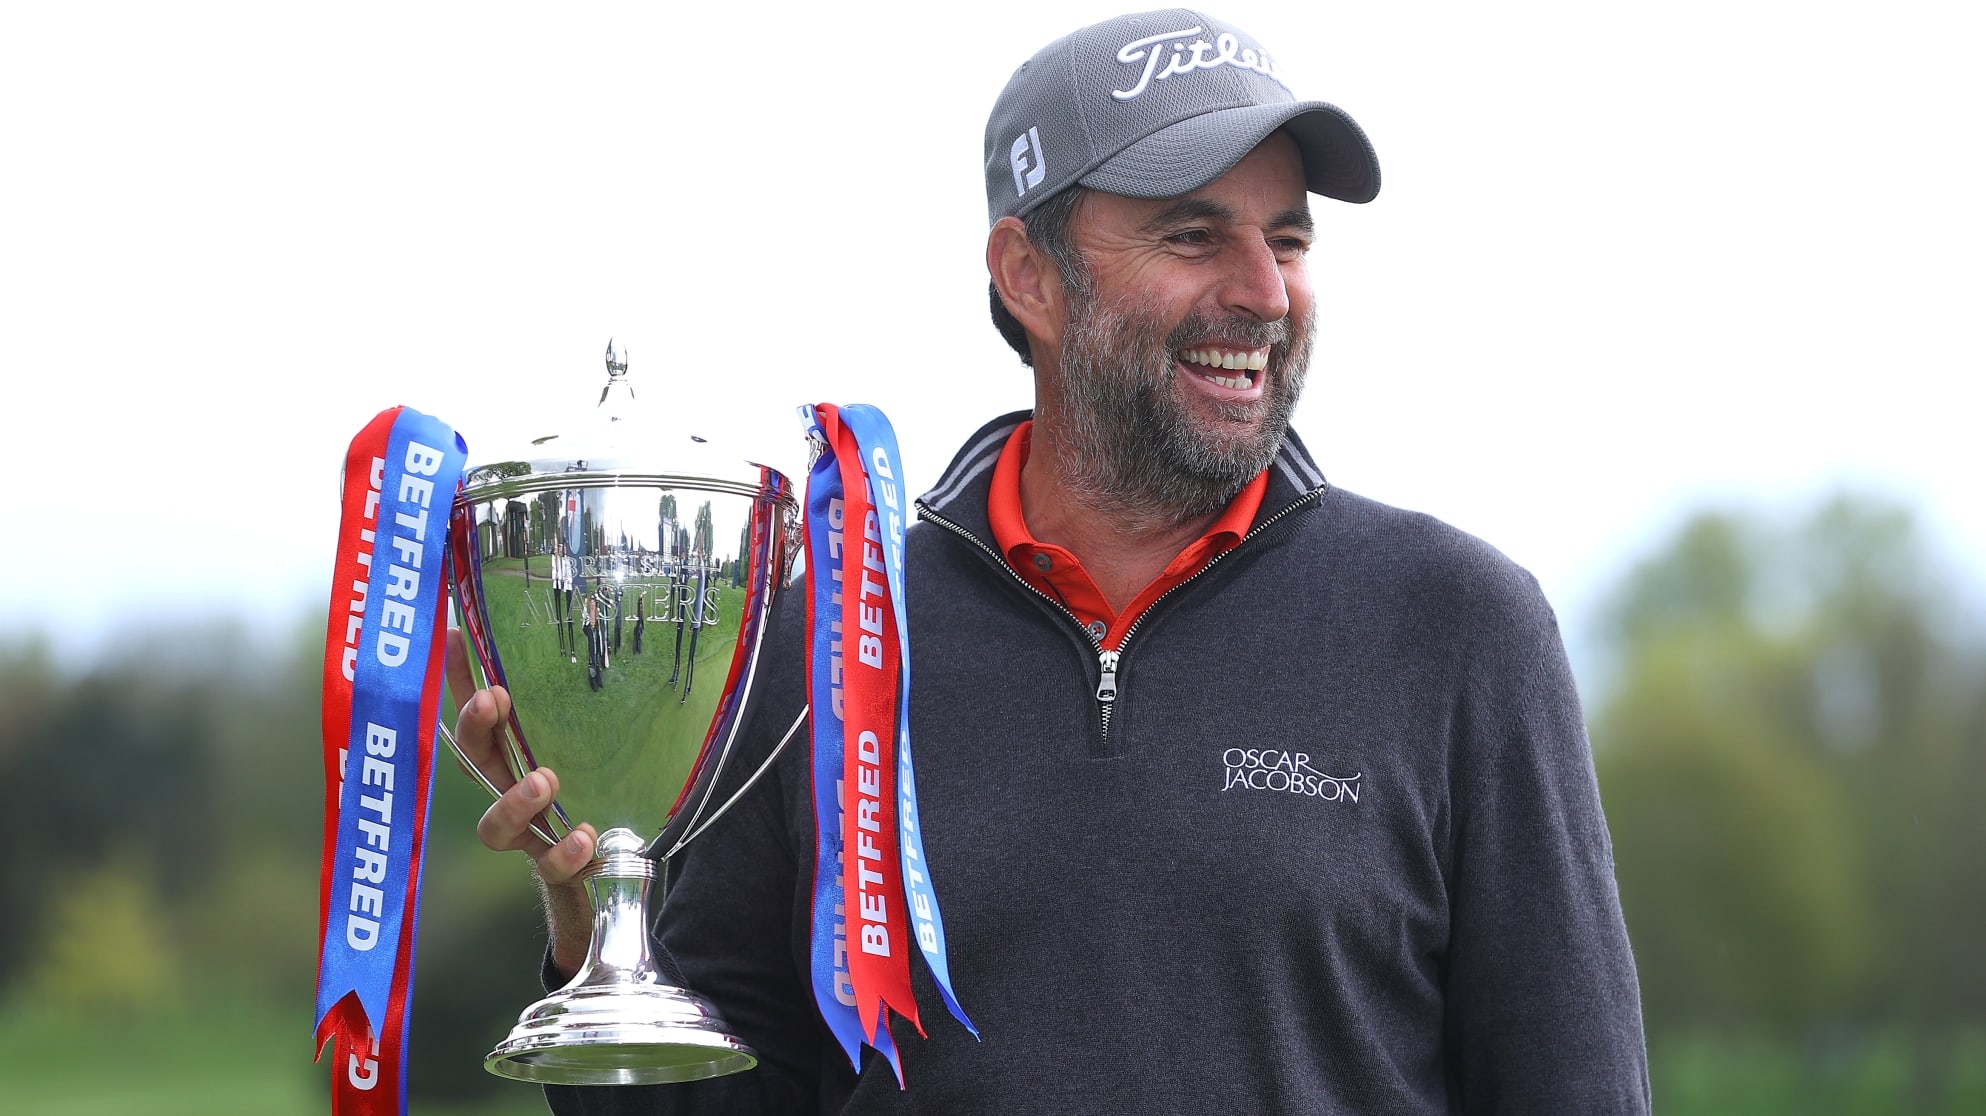 Golfer có chiến thắng đầu tiên trên European Tour sau 478 giải đấu